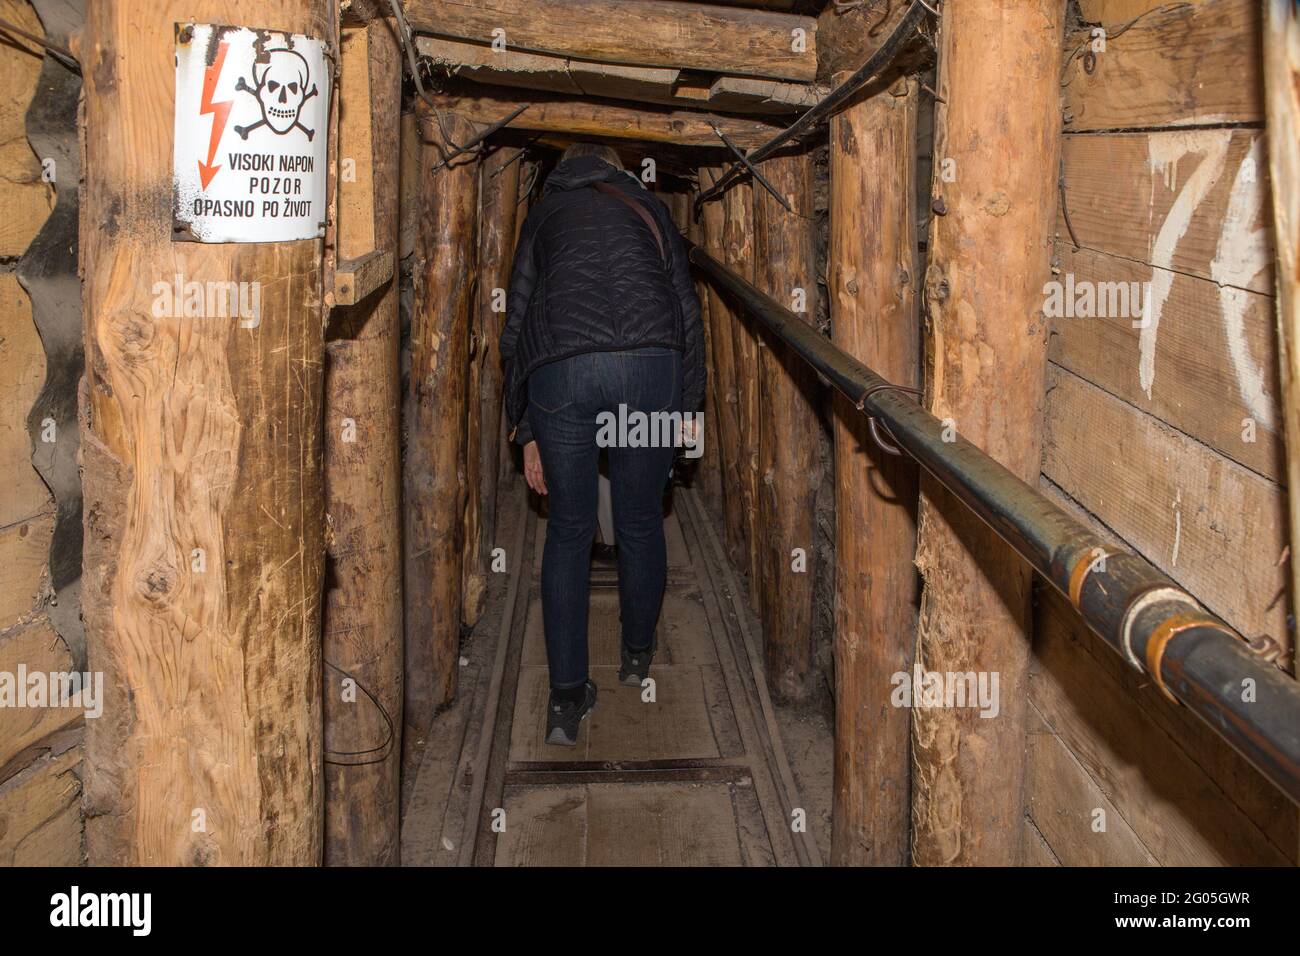 Per dare un'idea di altezza, visitatori accovacciati, Sarajevo Tunnel akaSvasa = Tunnel di salvataggio o Tunnel della speranza, Sarajevo, Bosnia e Herze Foto Stock